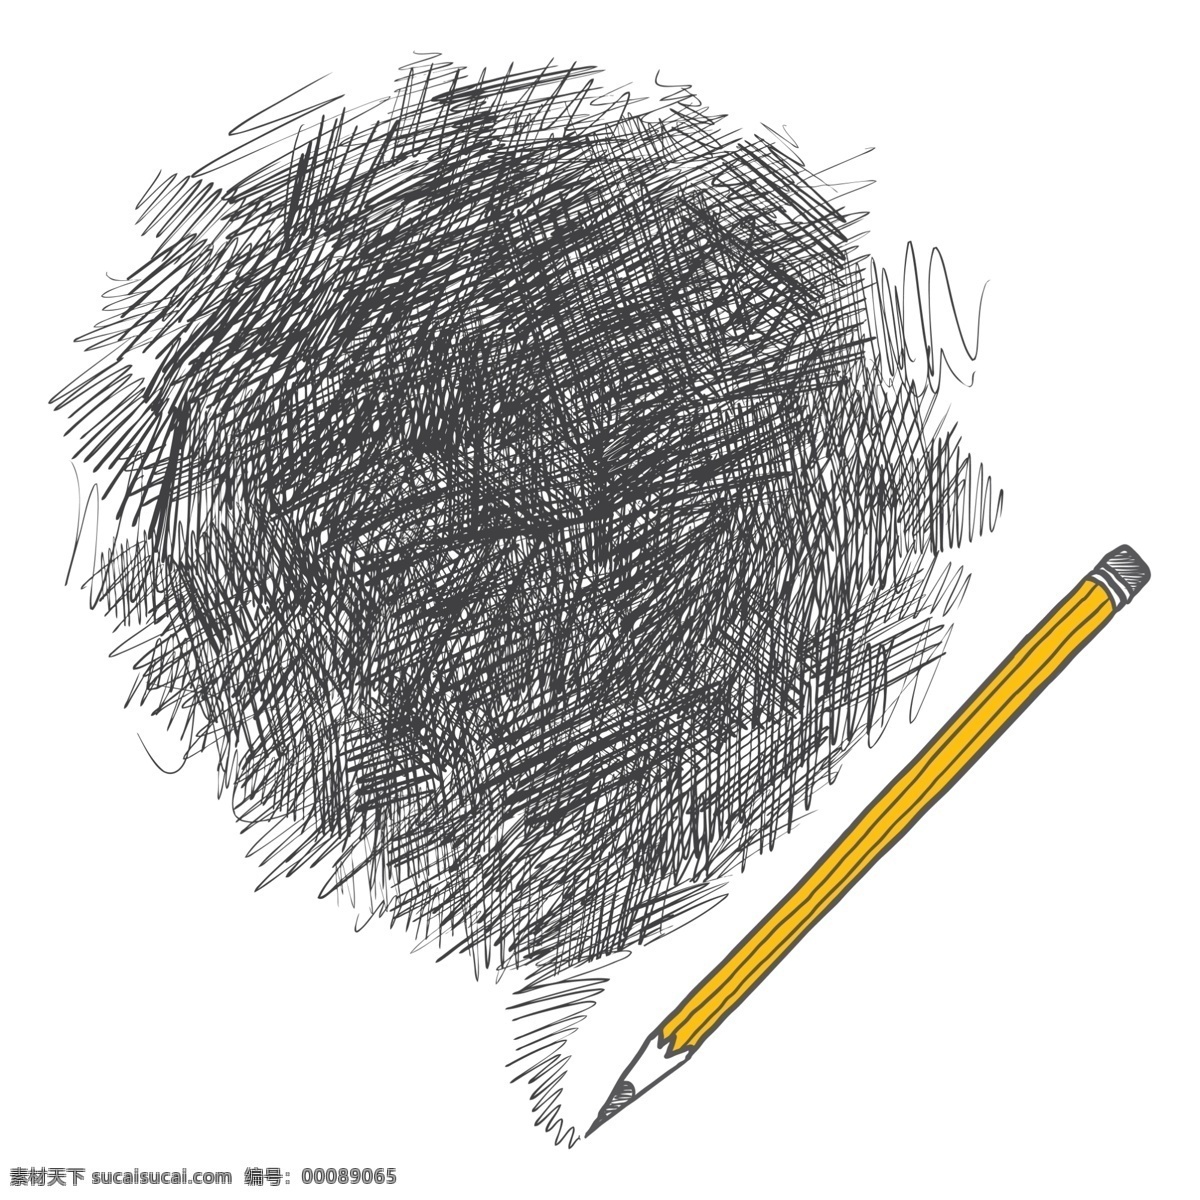 铅笔创意 铅笔涂鸦 涂鸦 创意 感叹号 彩色铅笔 铅笔 卡通铅笔 创意铅笔 卡通彩色铅笔 彩色 美术绘画 卡通 铅笔头 绘图笔 彩笔 画笔 文具 学习办公 学习用品 办公用品 蓝色铅笔 生活百科 手绘 白色背景 背景分层 分层